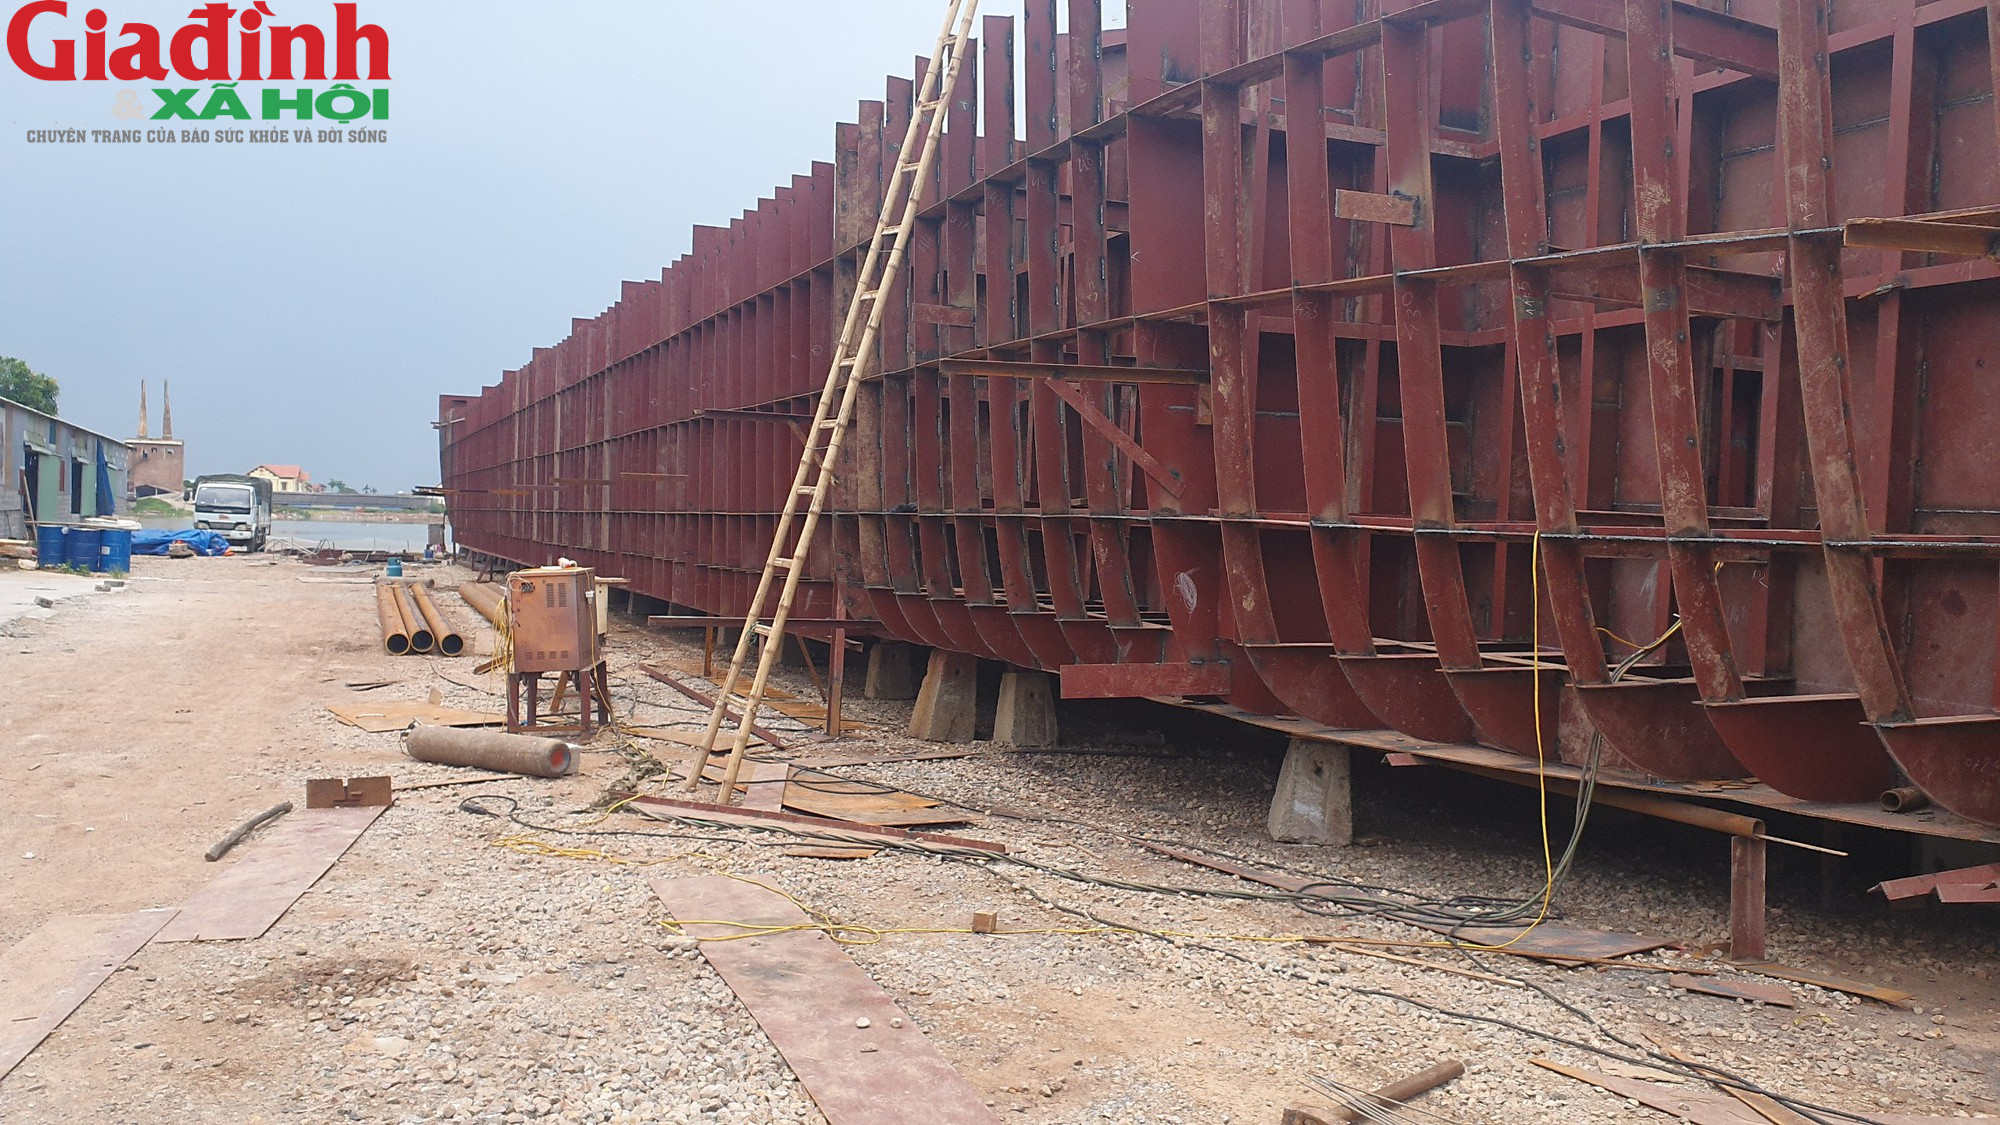 Những điều thú vị bên trong xưởng đóng tàu lớn nhất bên bờ sông Ninh Cơ ở Nam Định - Ảnh 6.